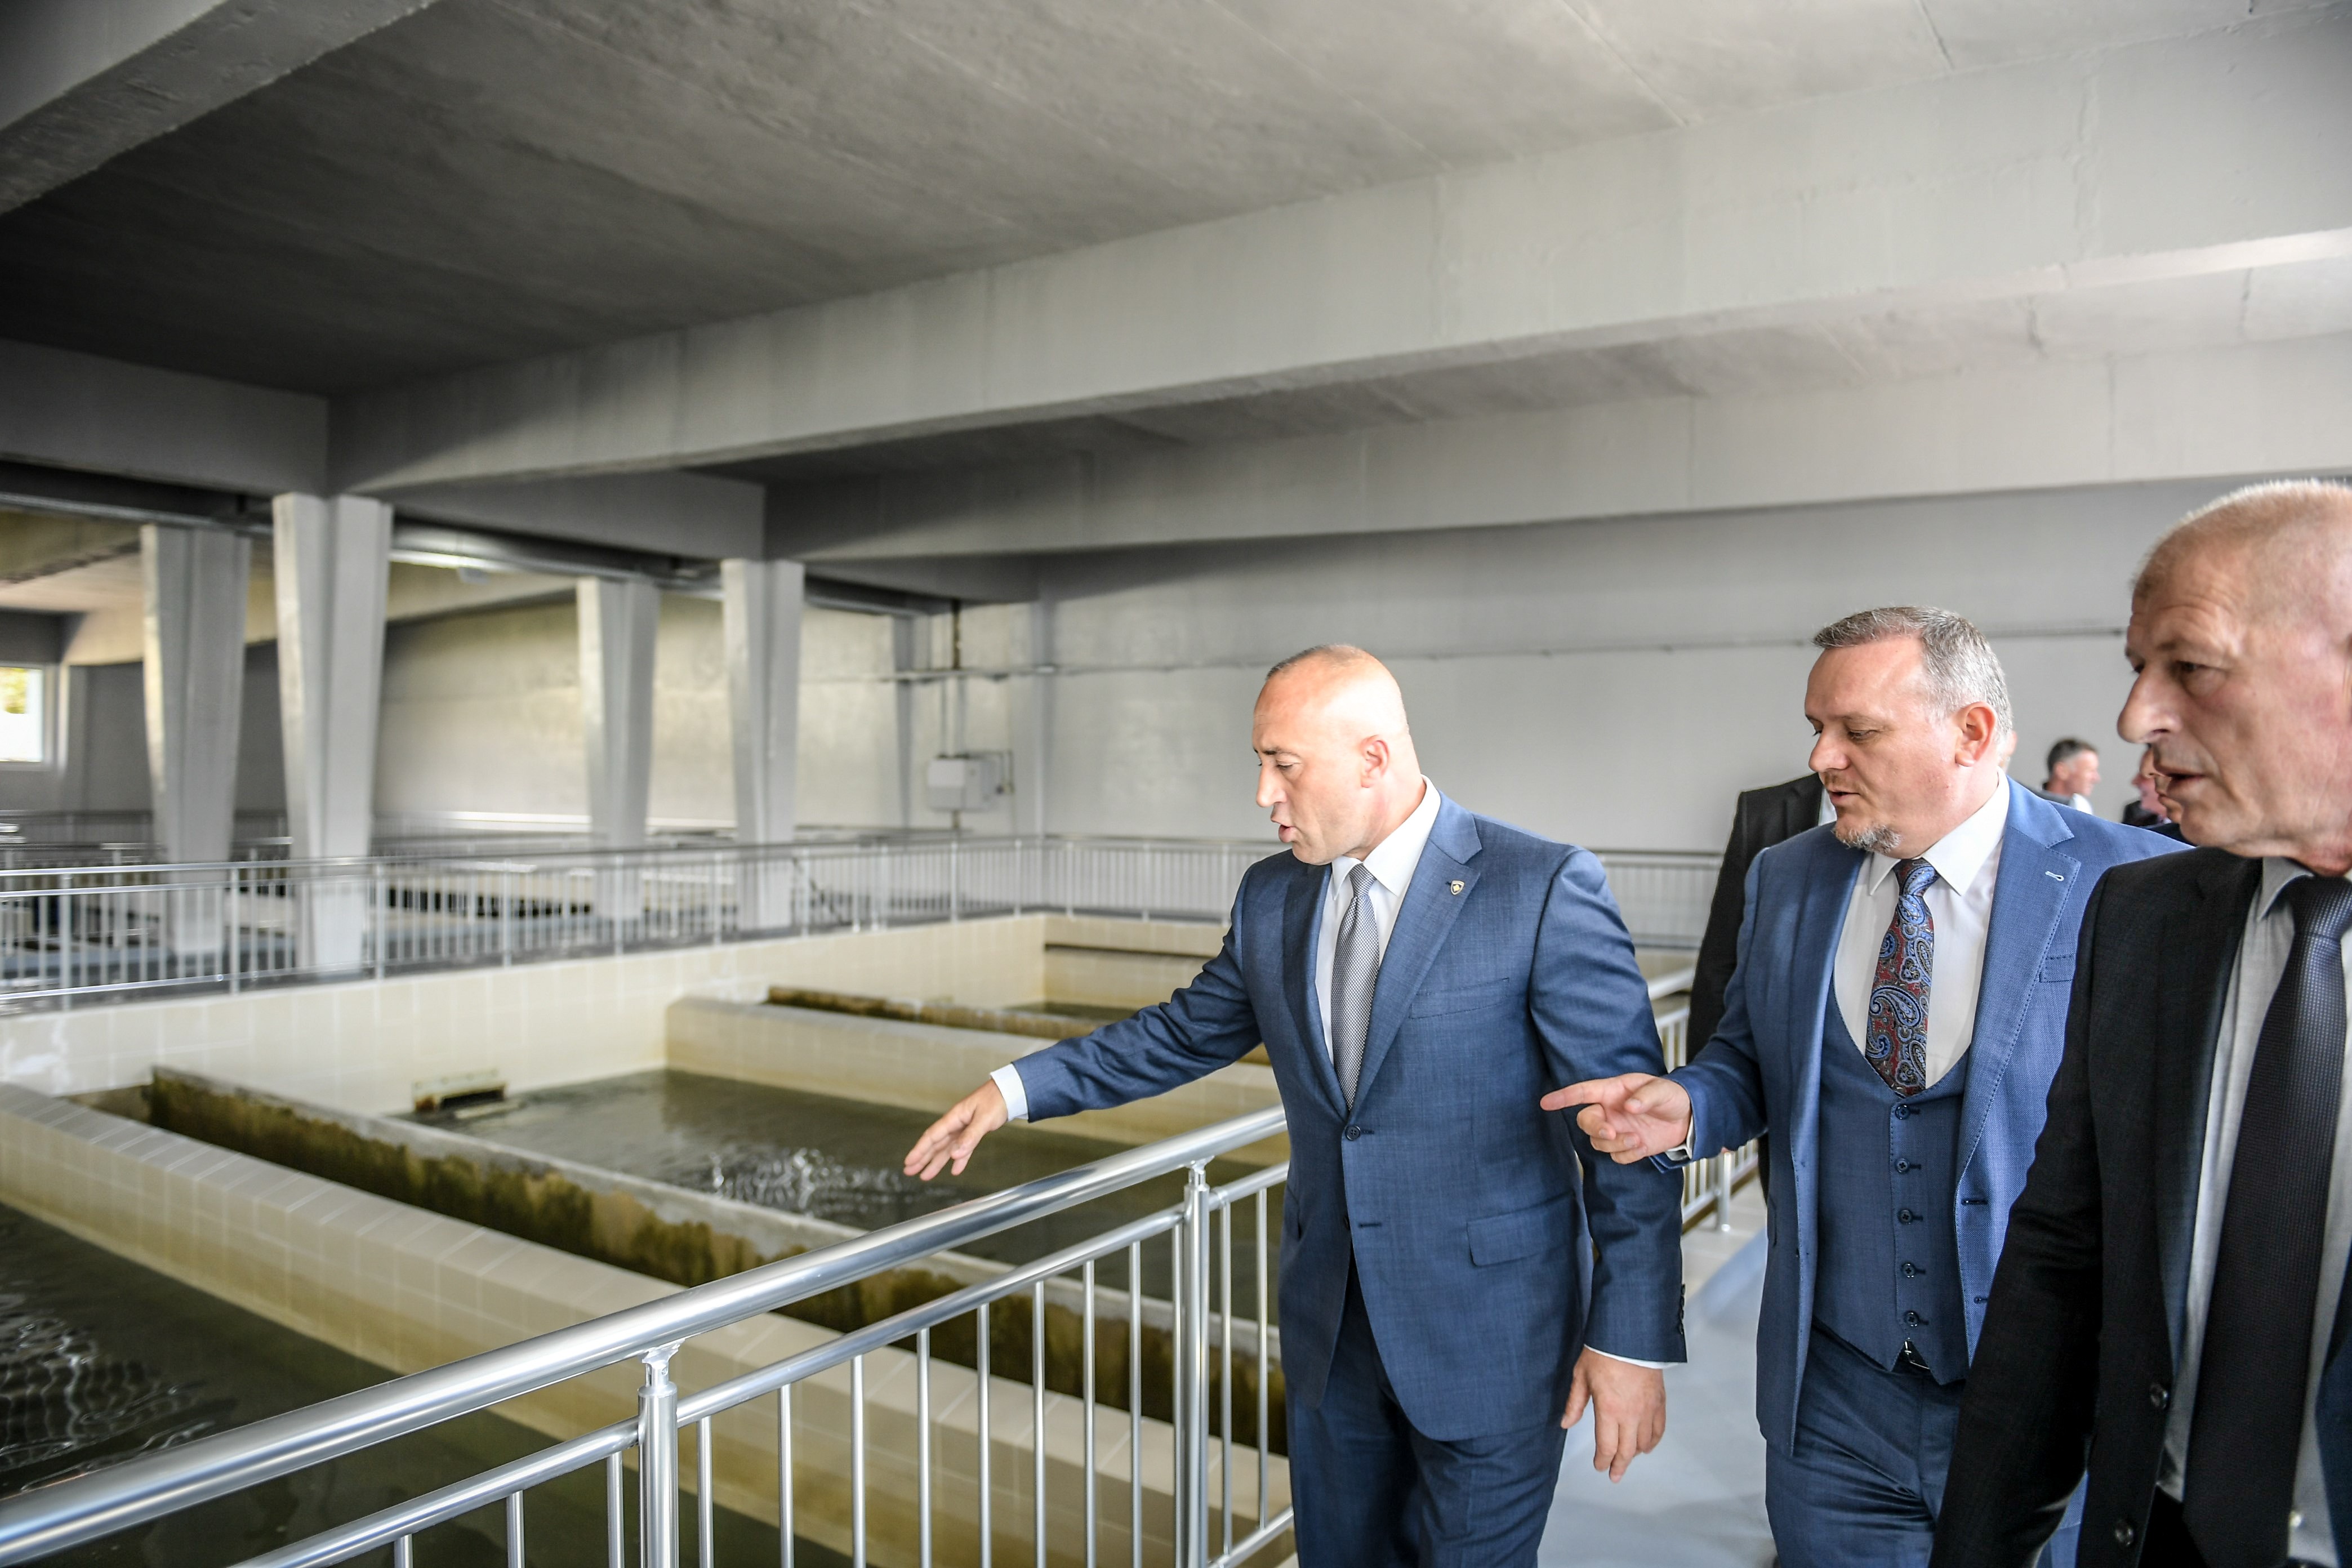 Trajtimi i ujit mbetet akoma sfidë për Kosovën